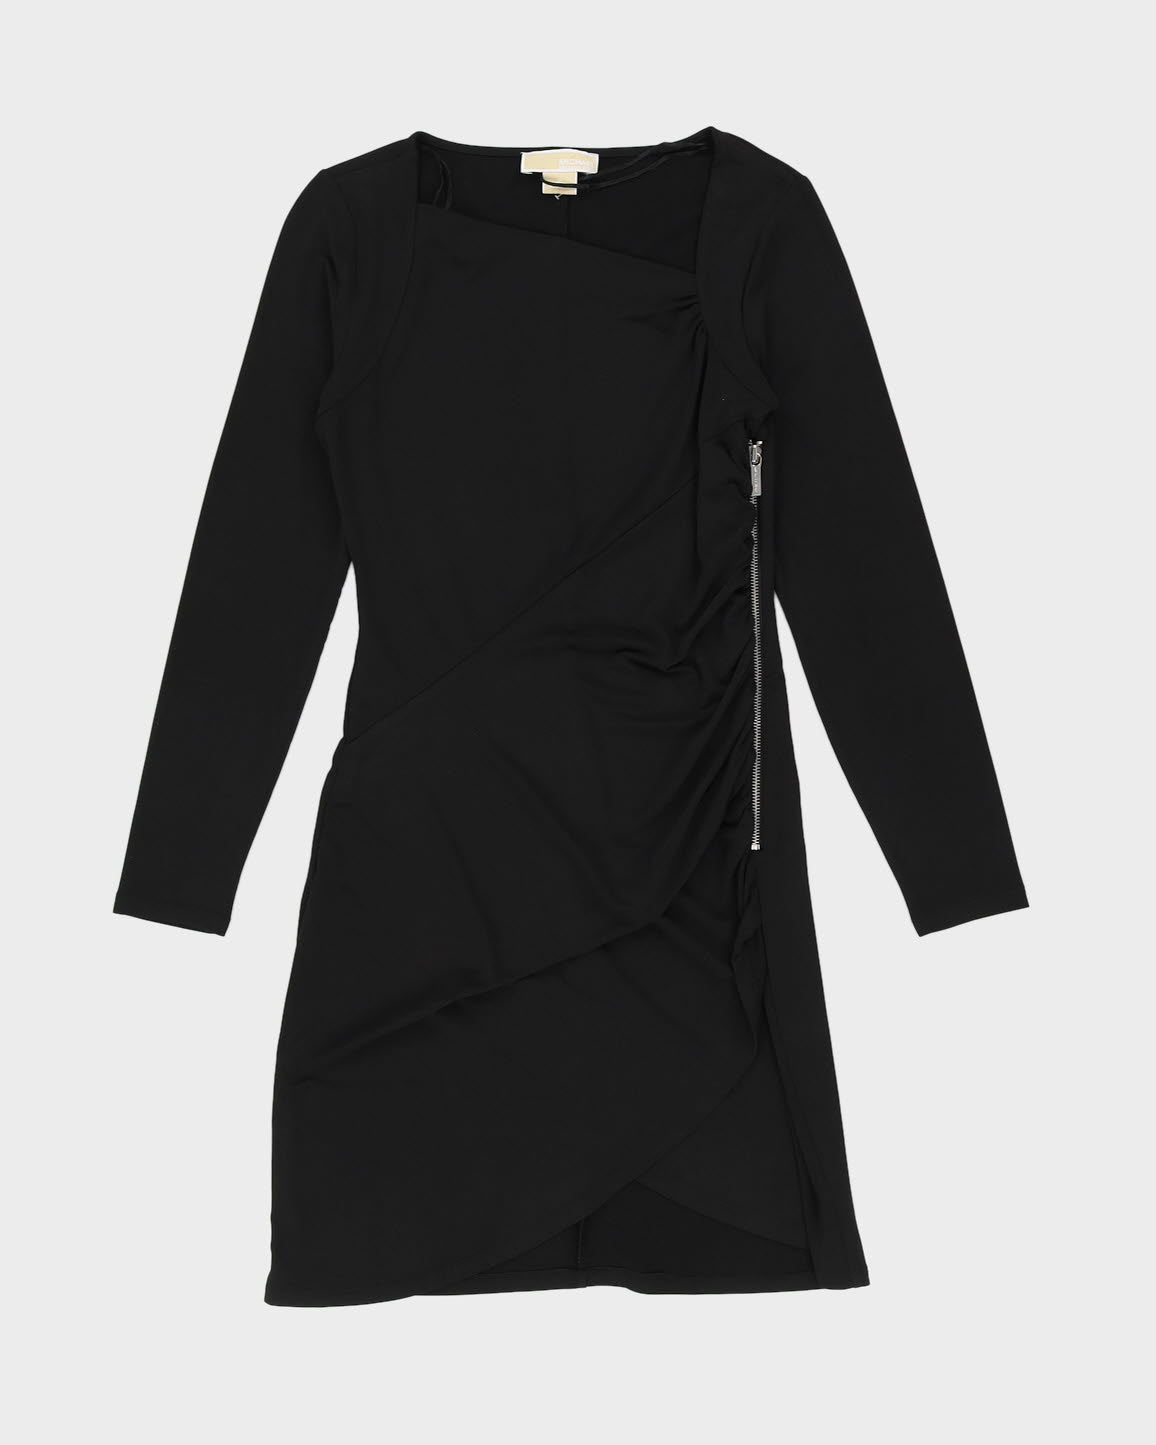 Michael Kors Black Draped Dress - S